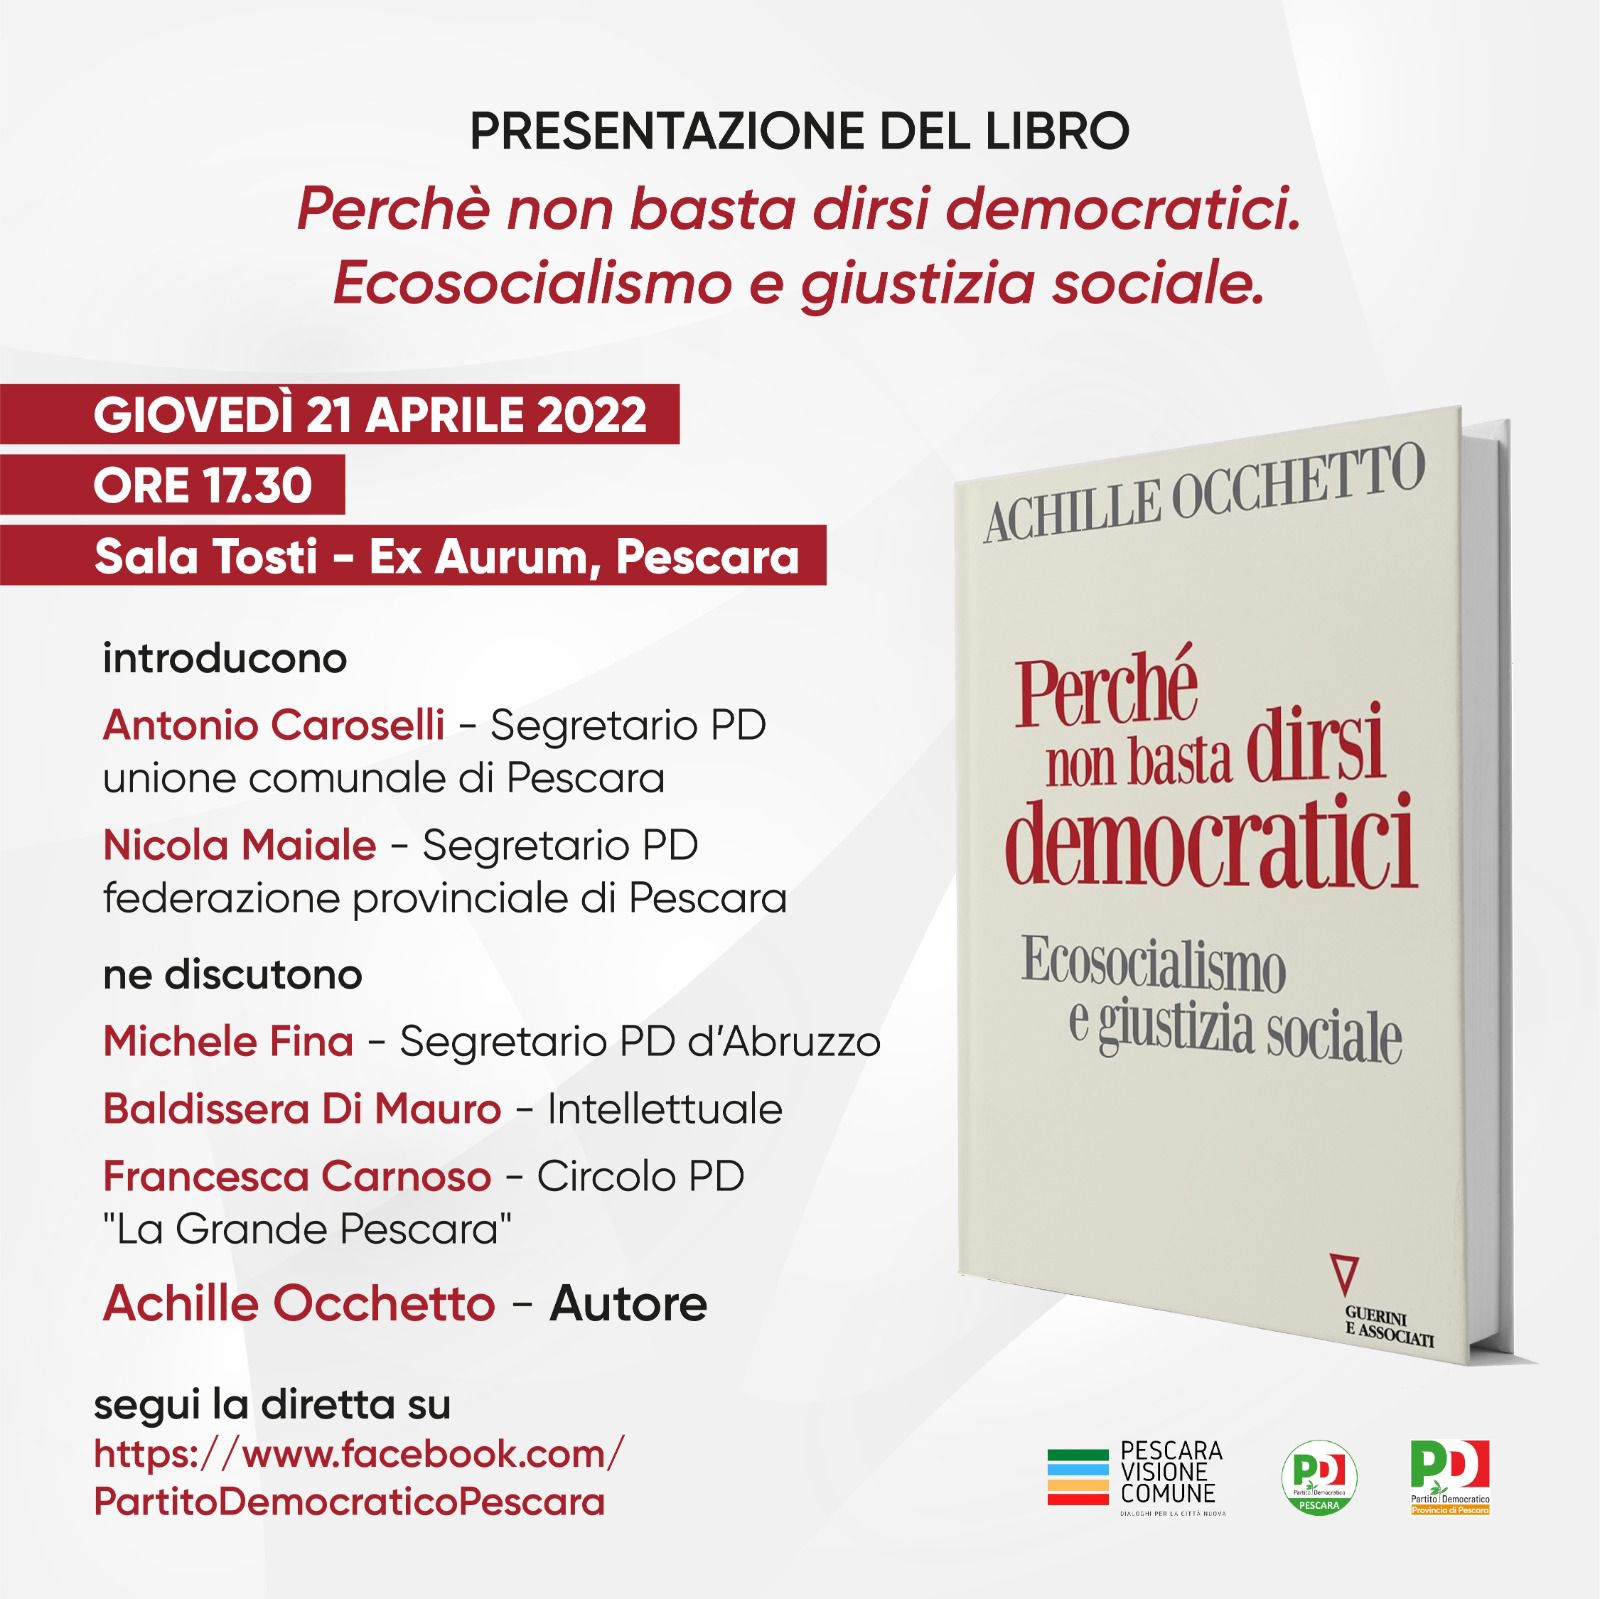 Perché non basta dirsi democratici: il 21 aprile a Pescara la presentazione del libro di Occhetto